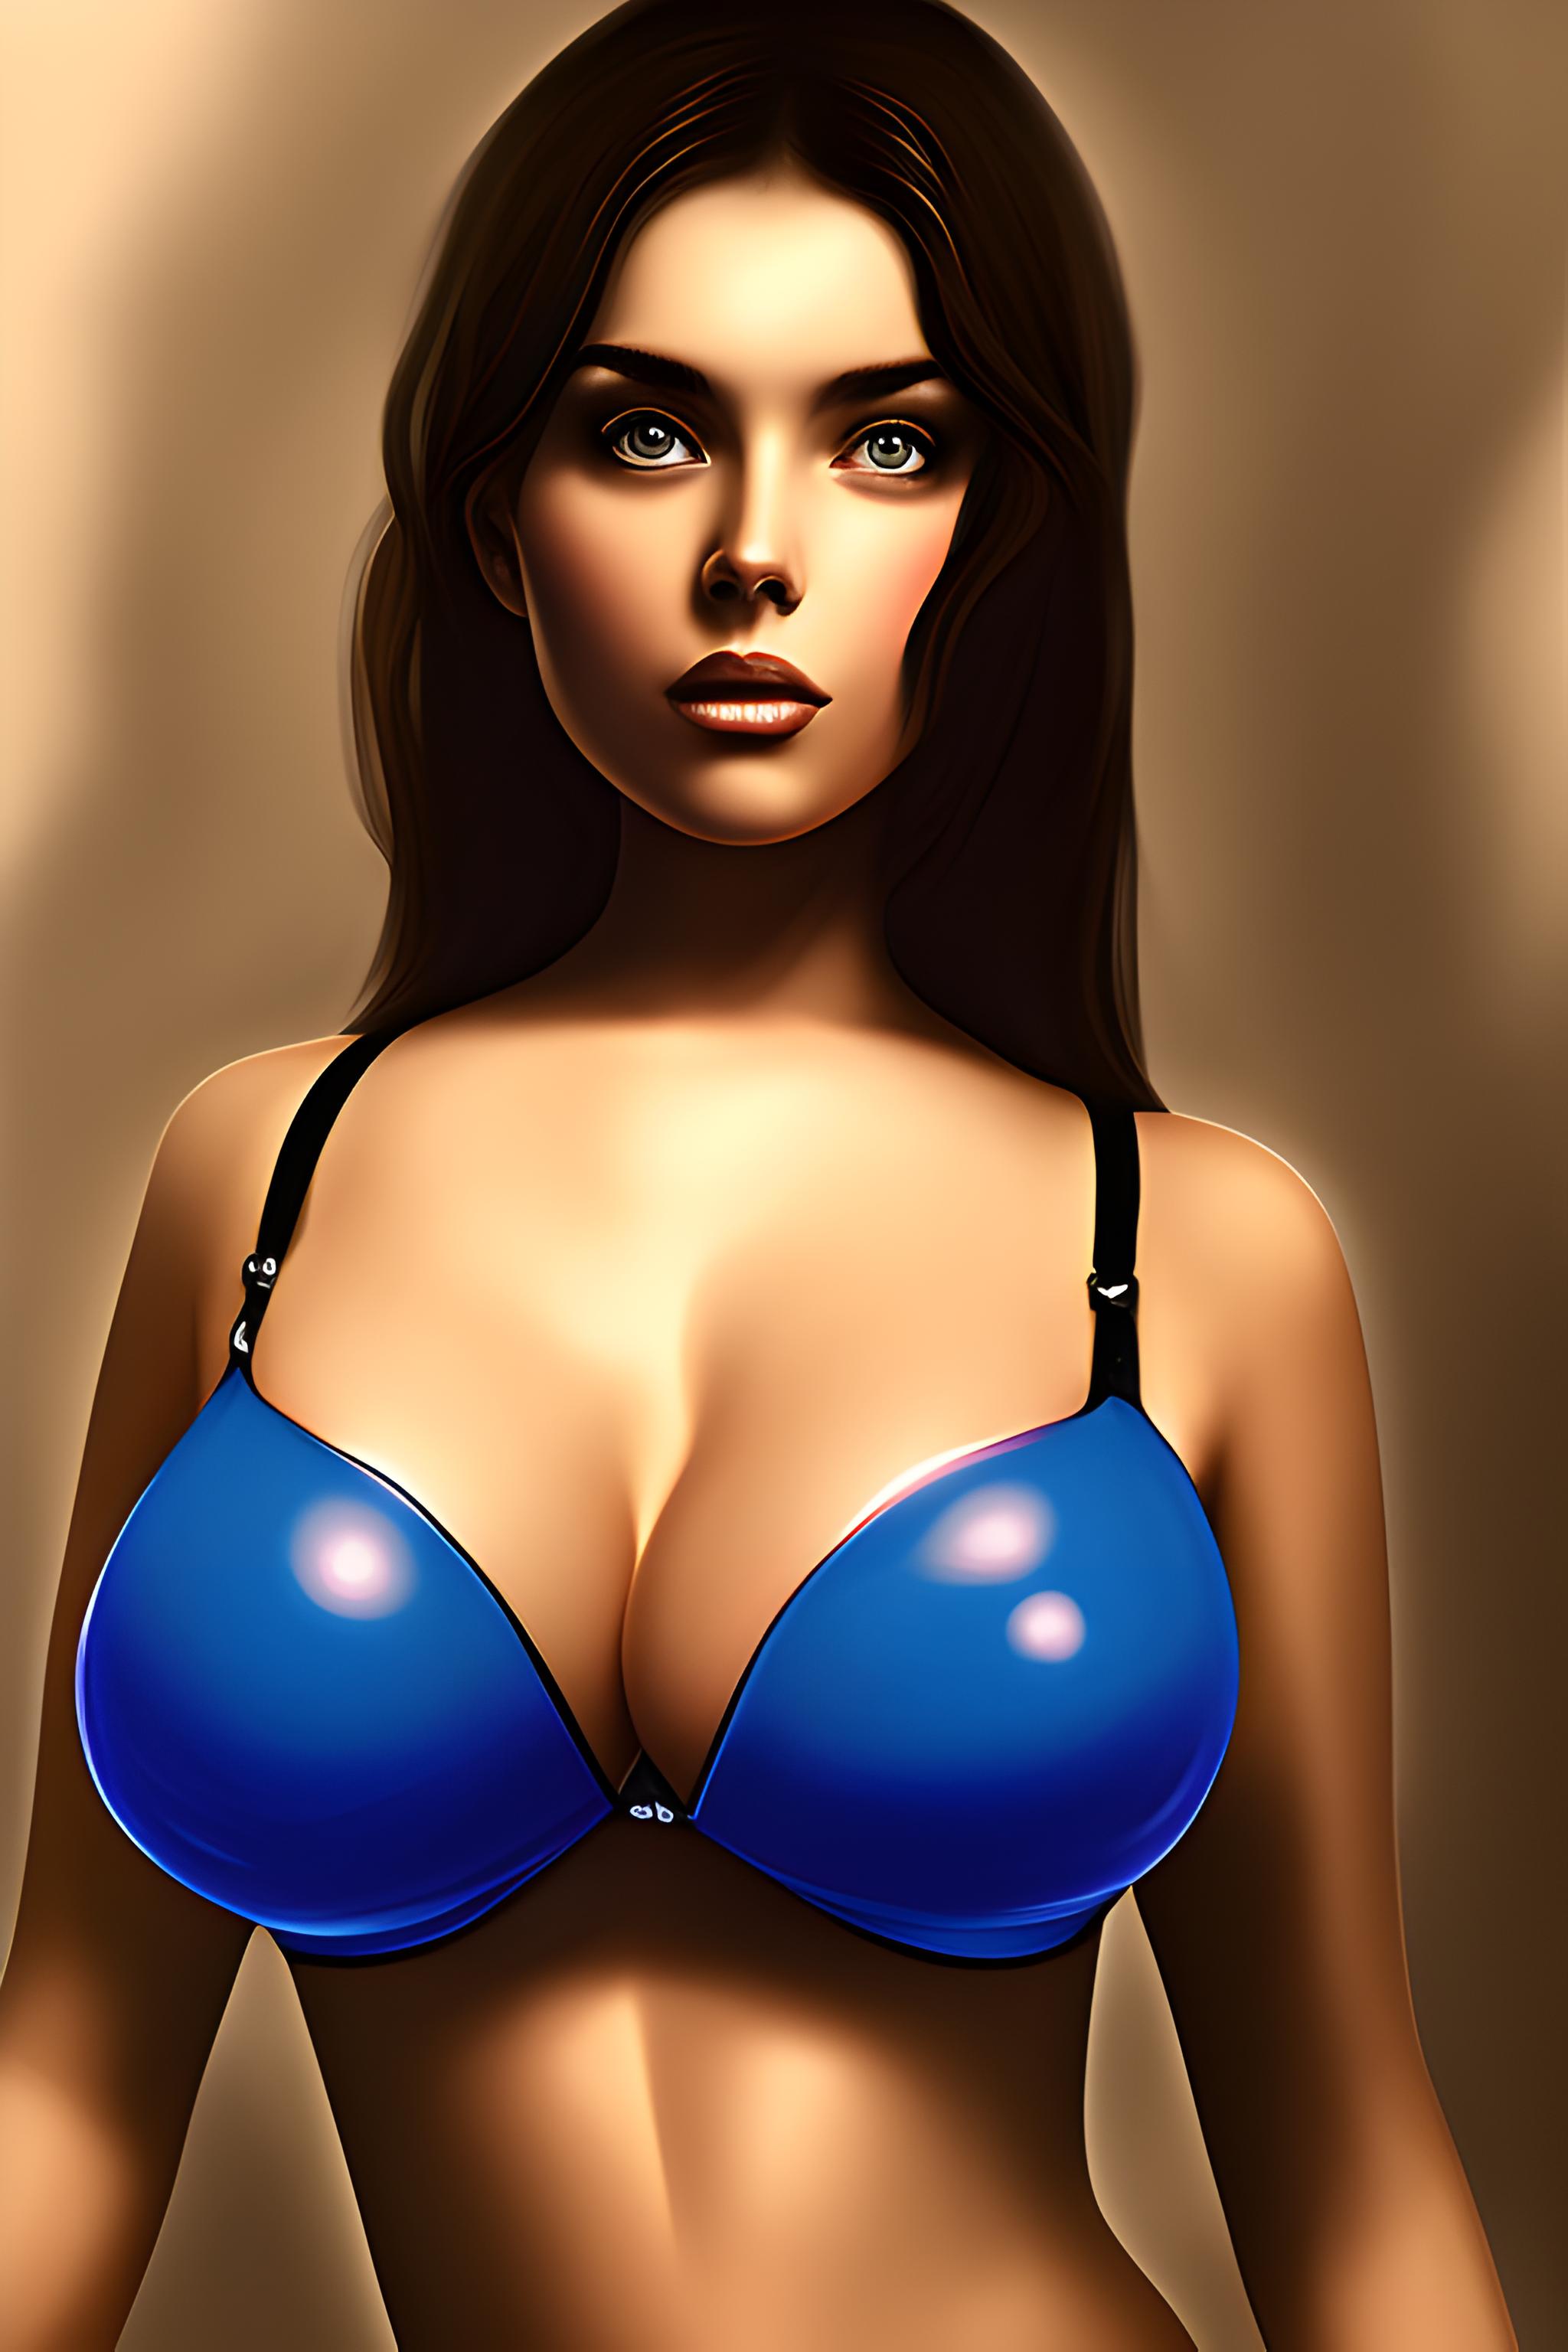 Big sexy boobs girl in bra